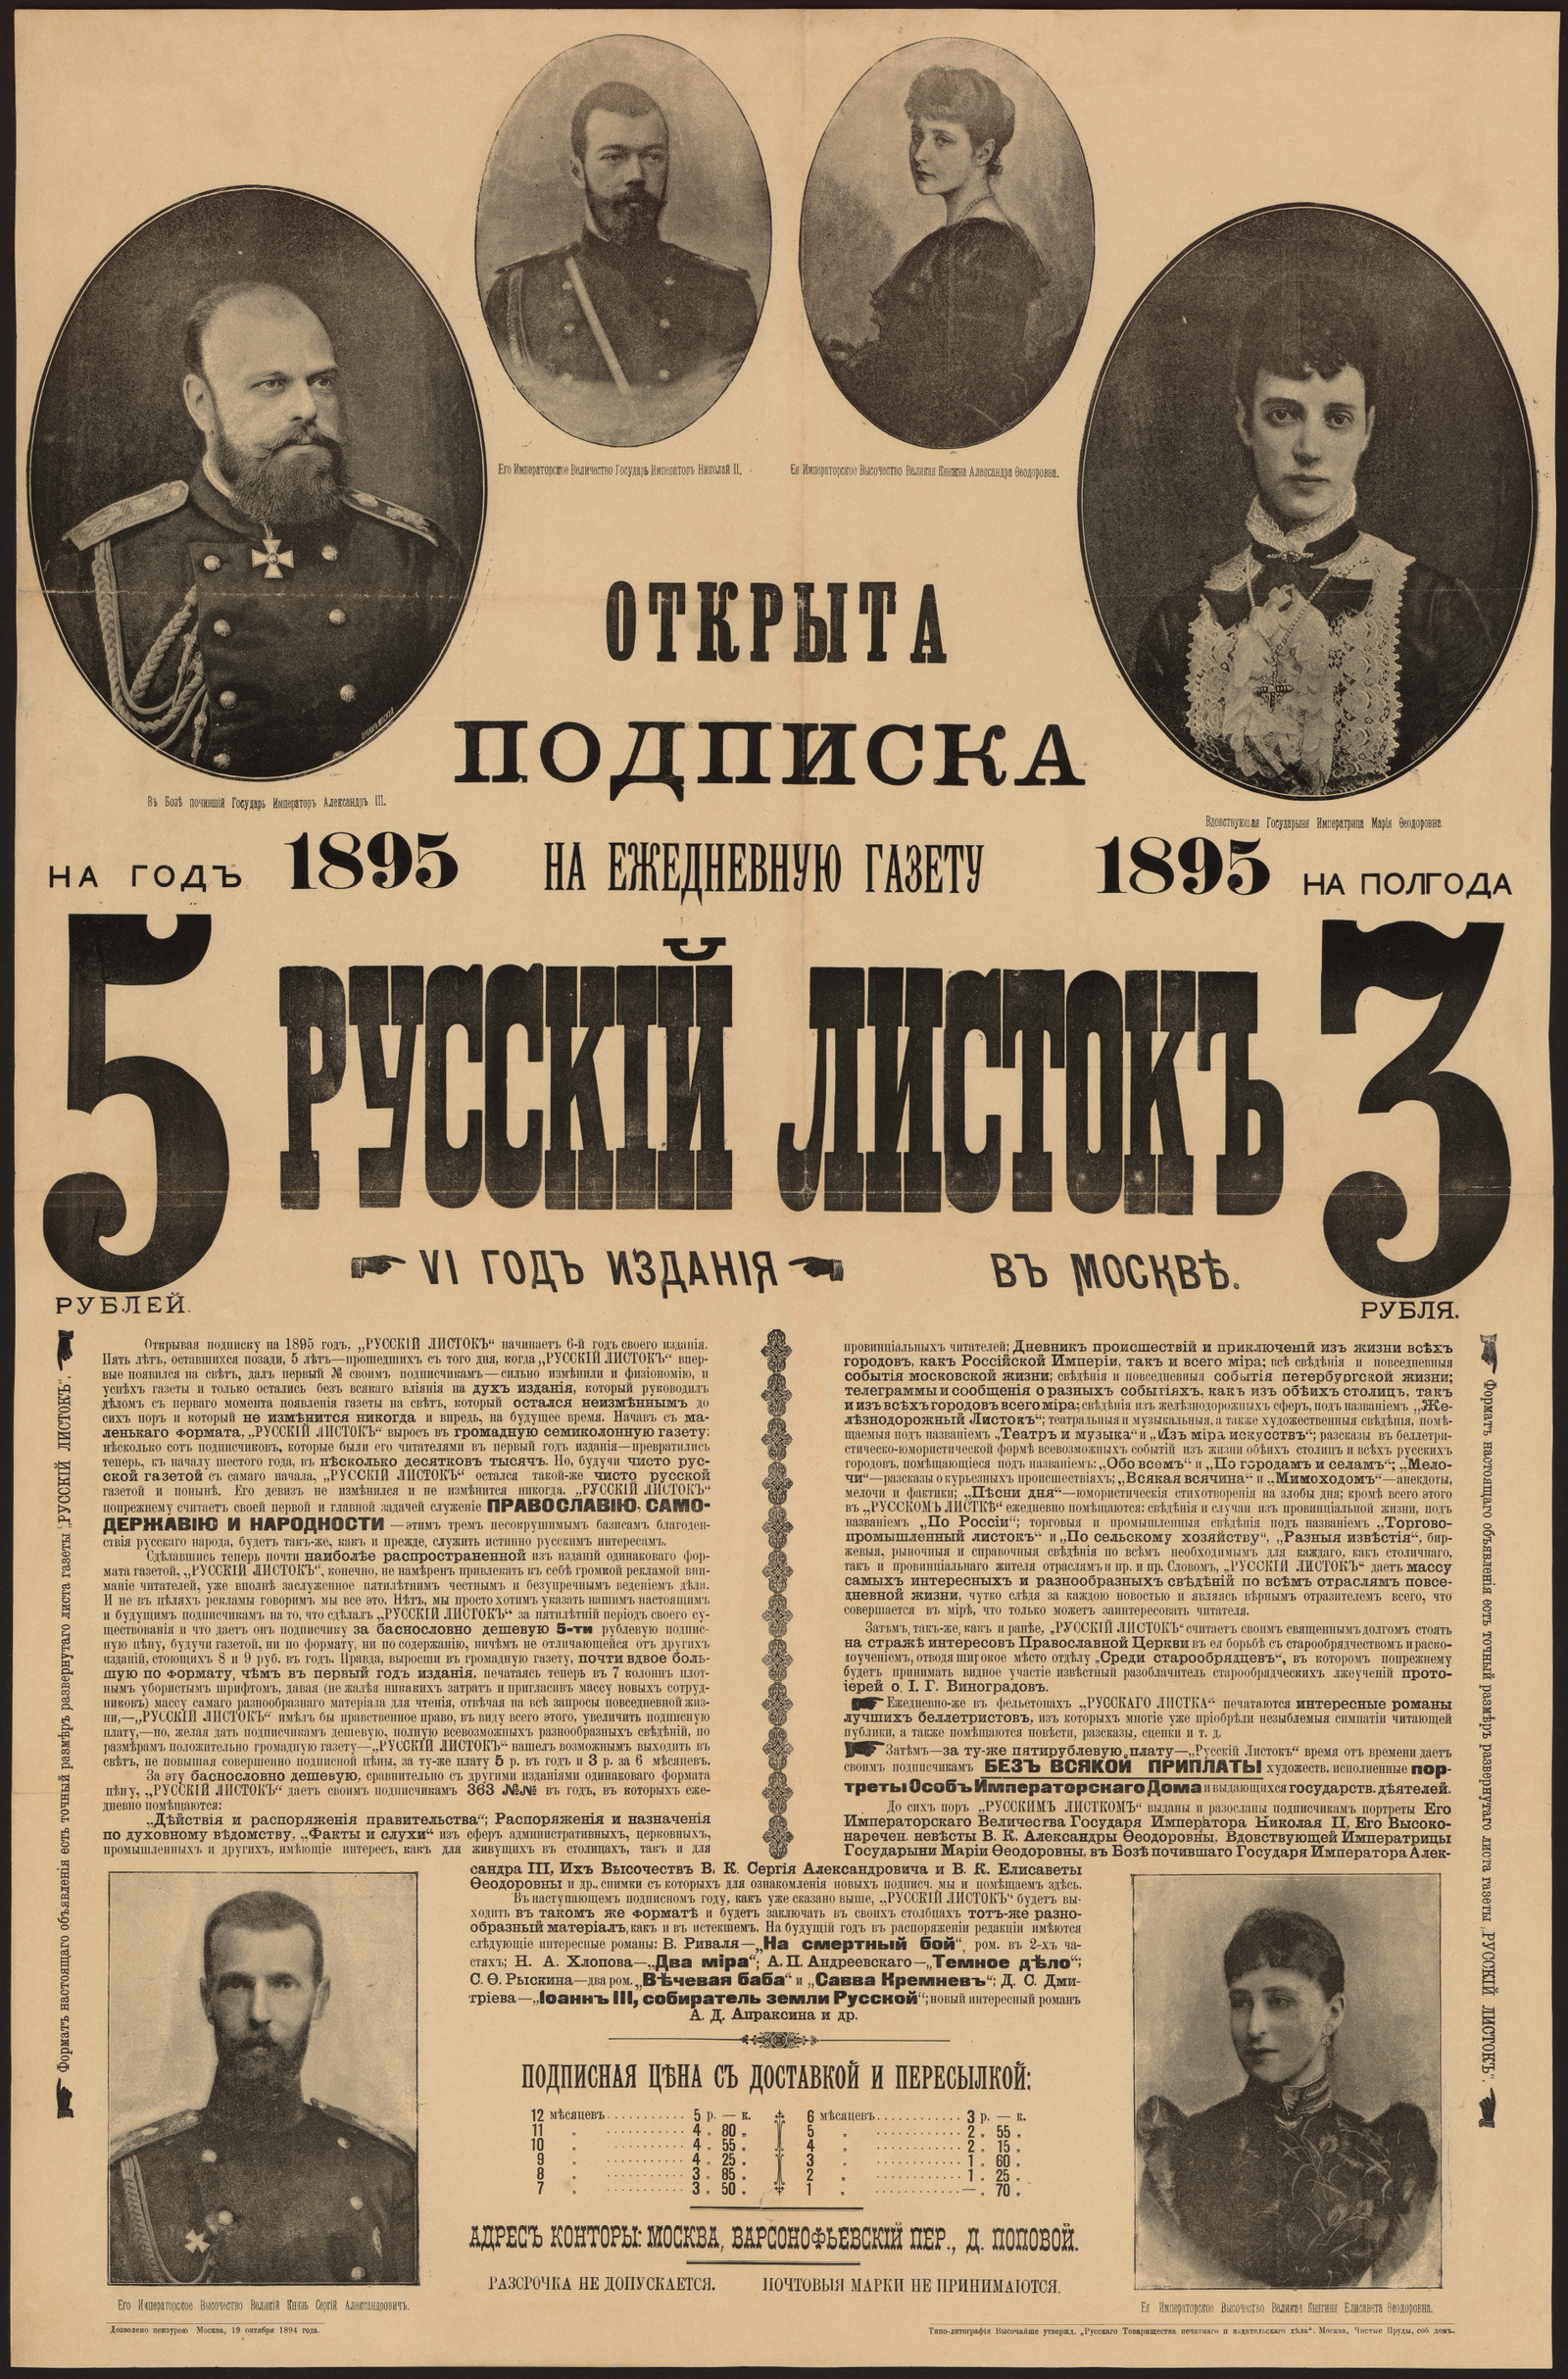 Изображение книги "Русский листок".  Открыта подписка на ежедневную газету, 1895